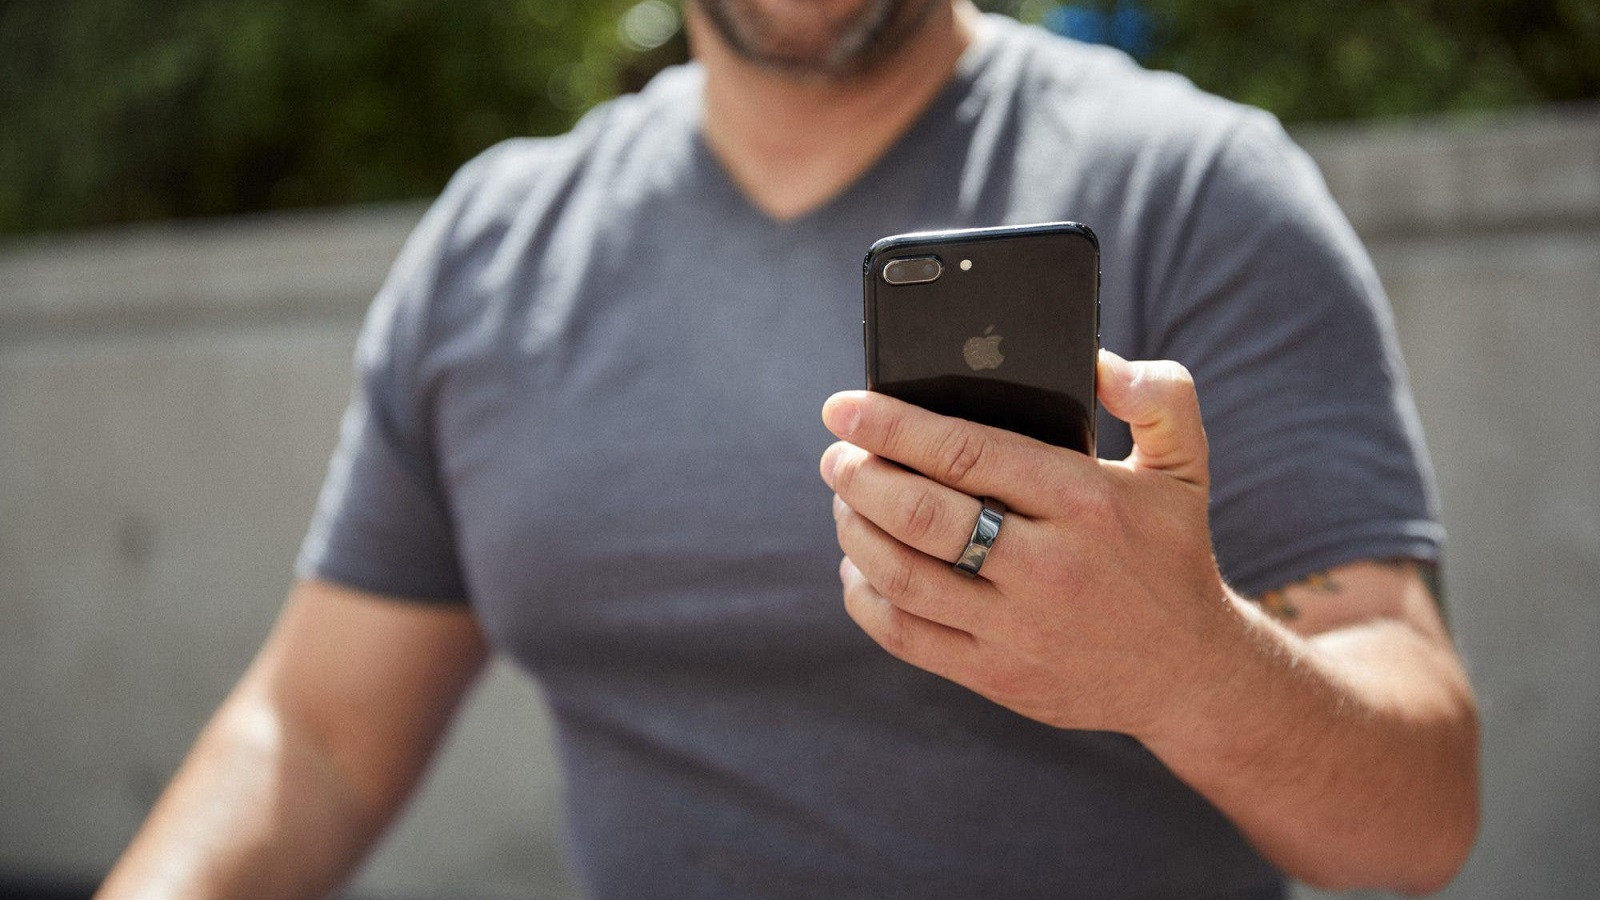 Apple ha patentado un anillo inteligente, aunque eso quizás no